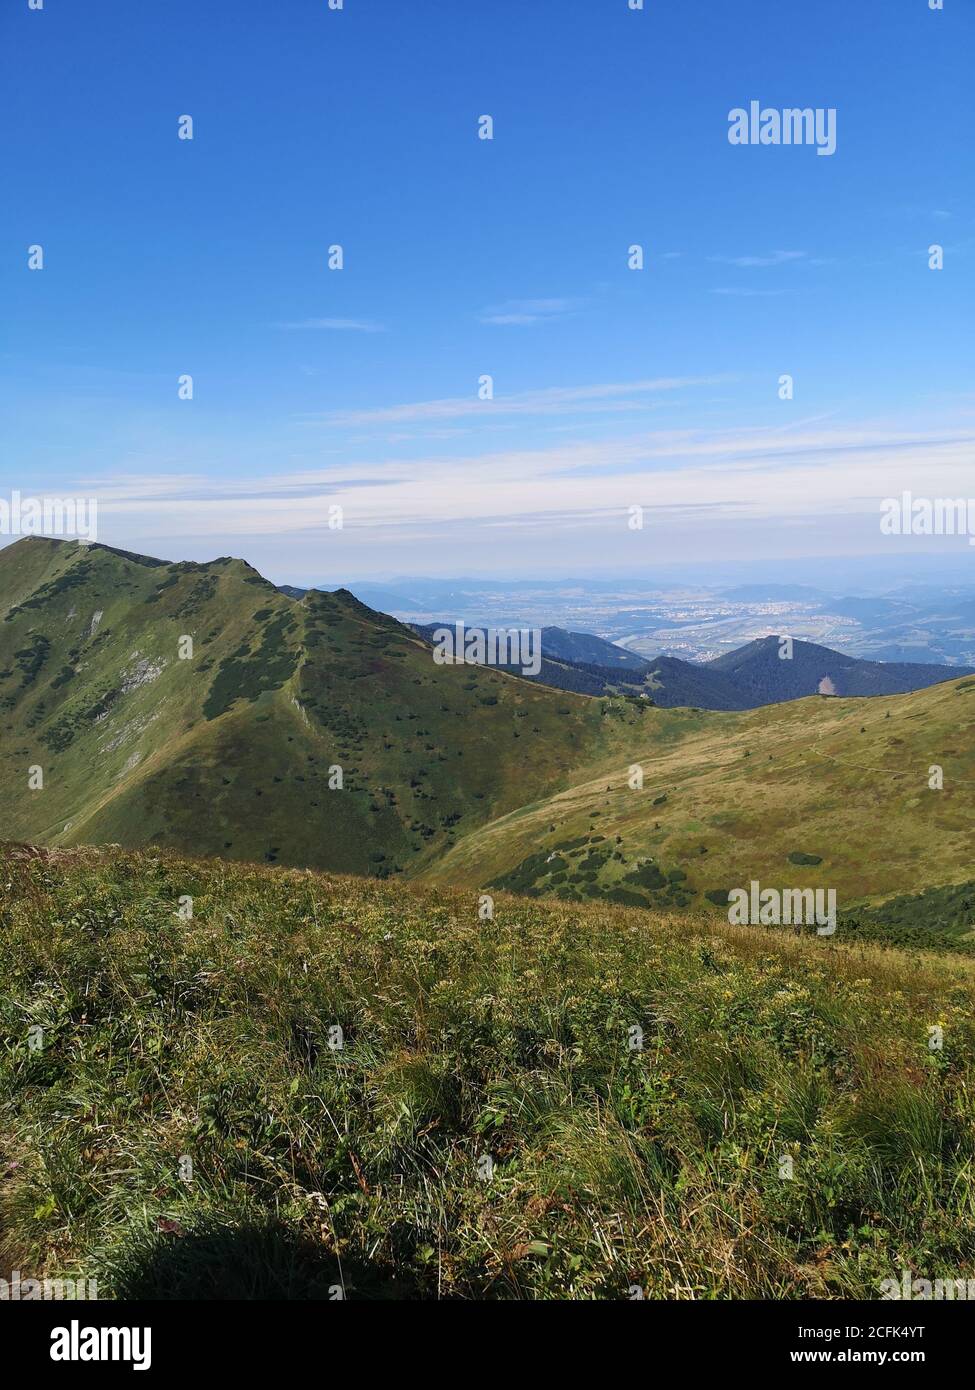 Paysage de montagne, Mala Fatra, Slovaquie Banque D'Images